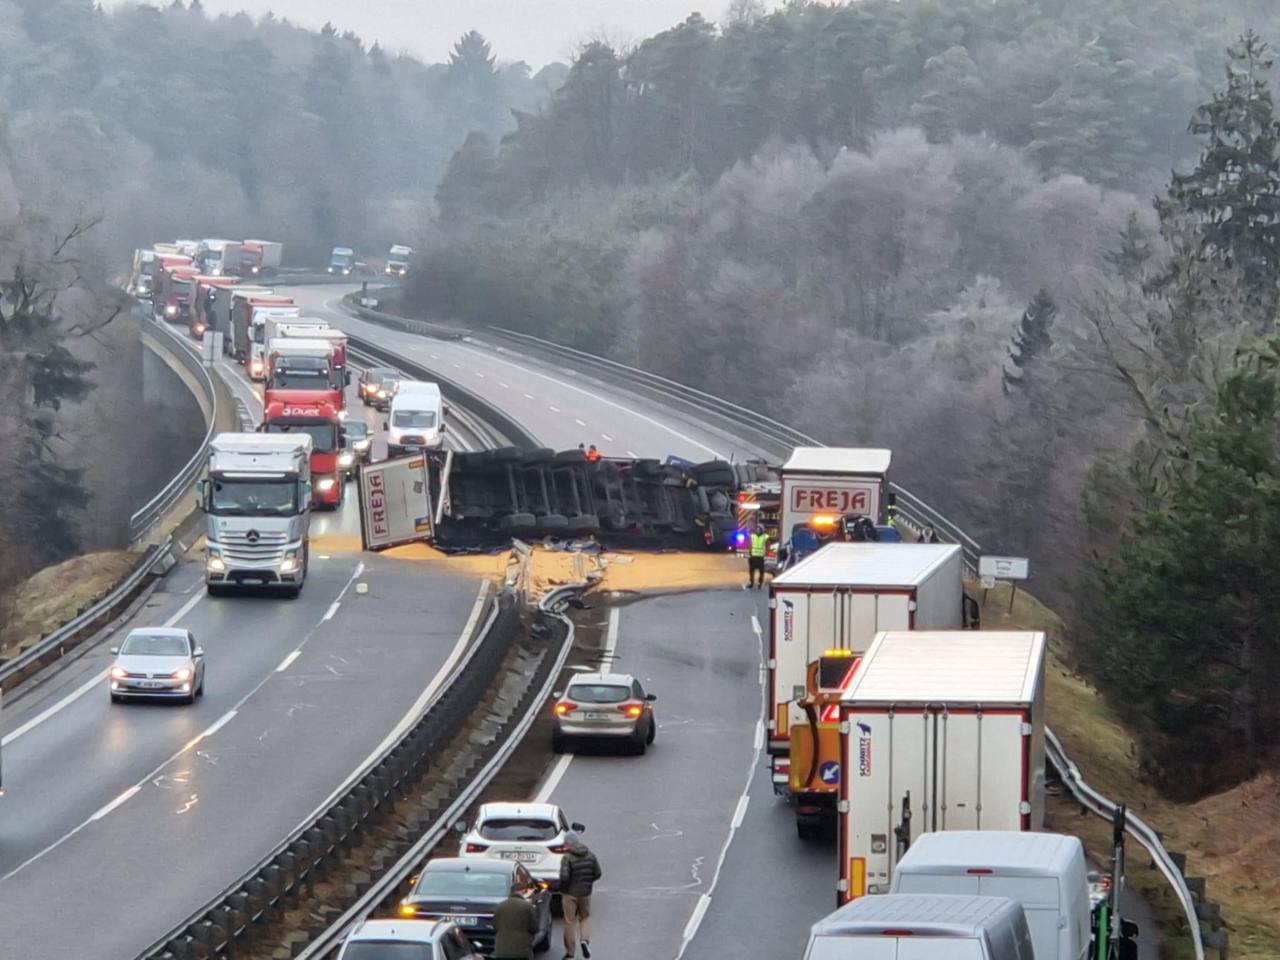 FOTO: Tragična prometna nesreča, voznik tovornjaka podlegel poškodbam